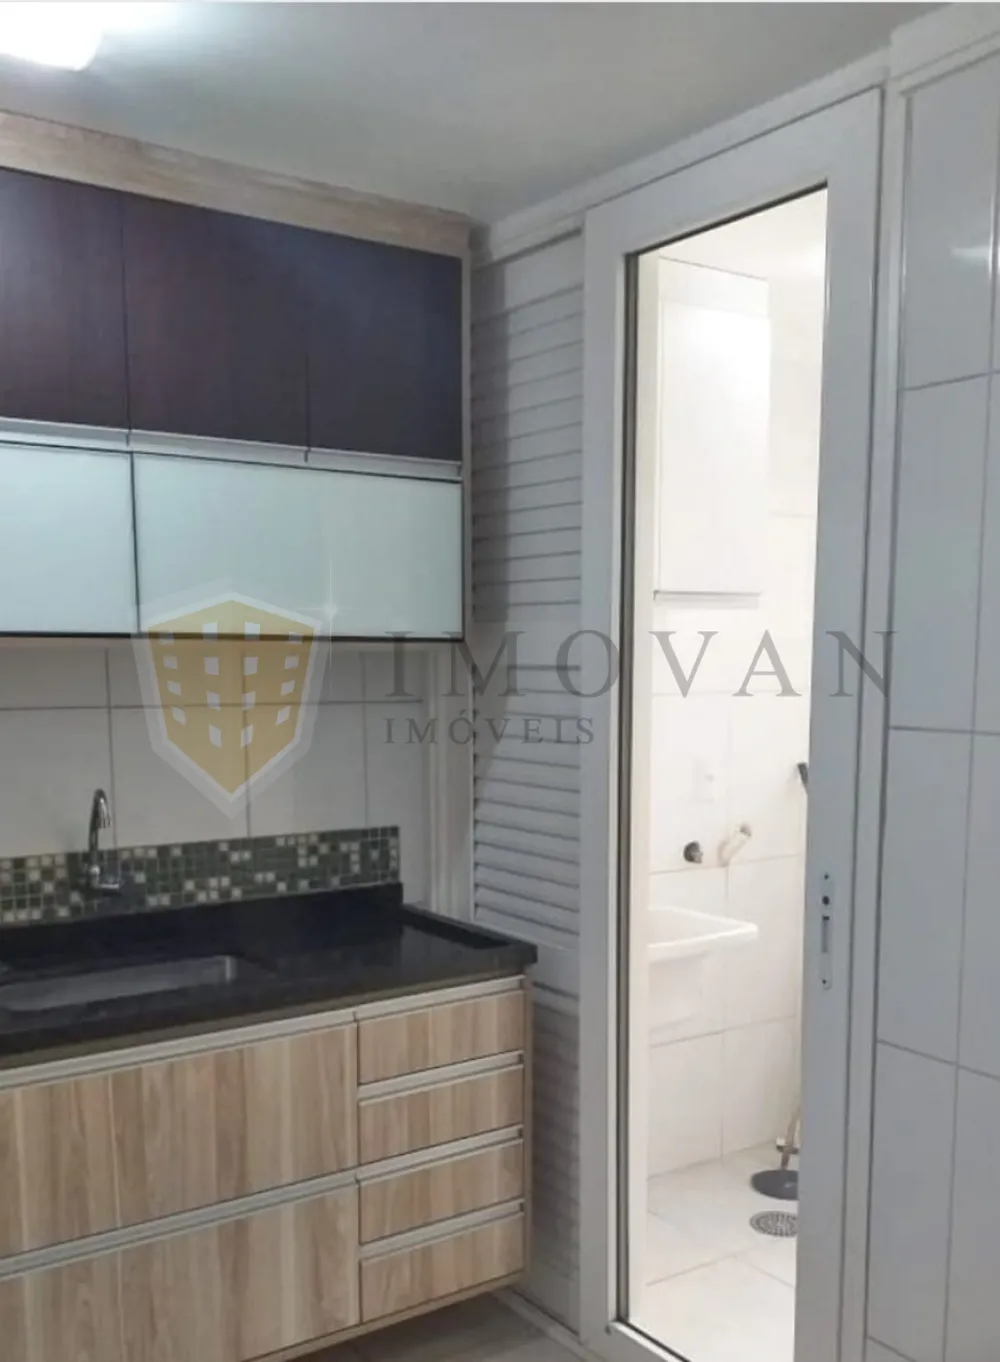 Comprar Apartamento / Padrão em Ribeirão Preto R$ 400.000,00 - Foto 9